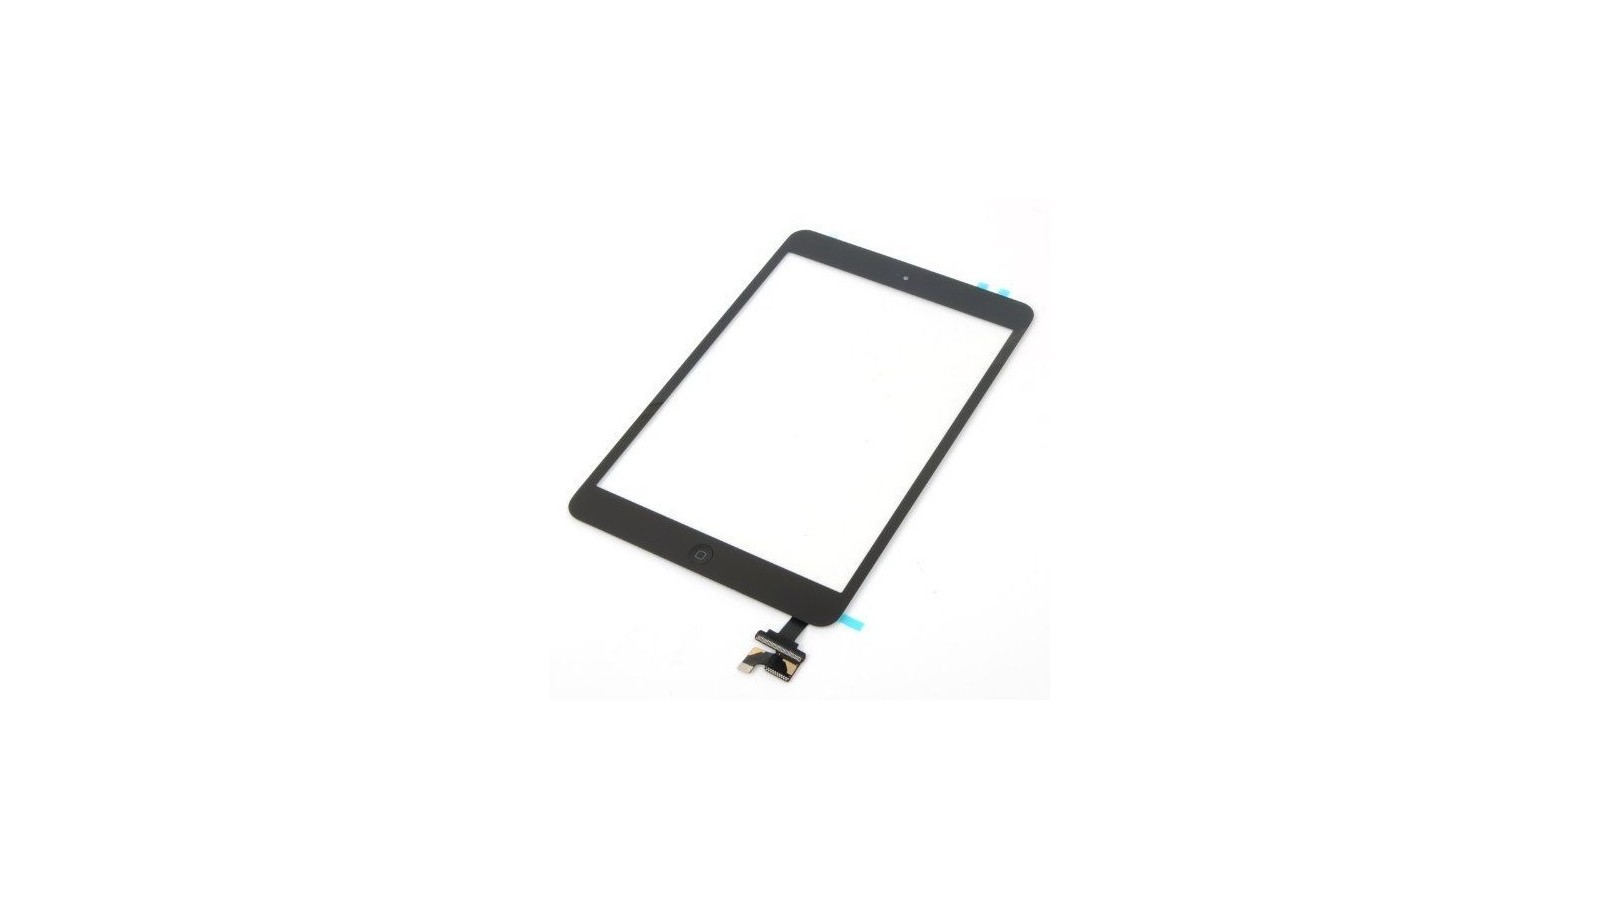 Touch screen vetro Apple iPad Mini 3 A1599 A1600 A601 serie completo connettore e flat